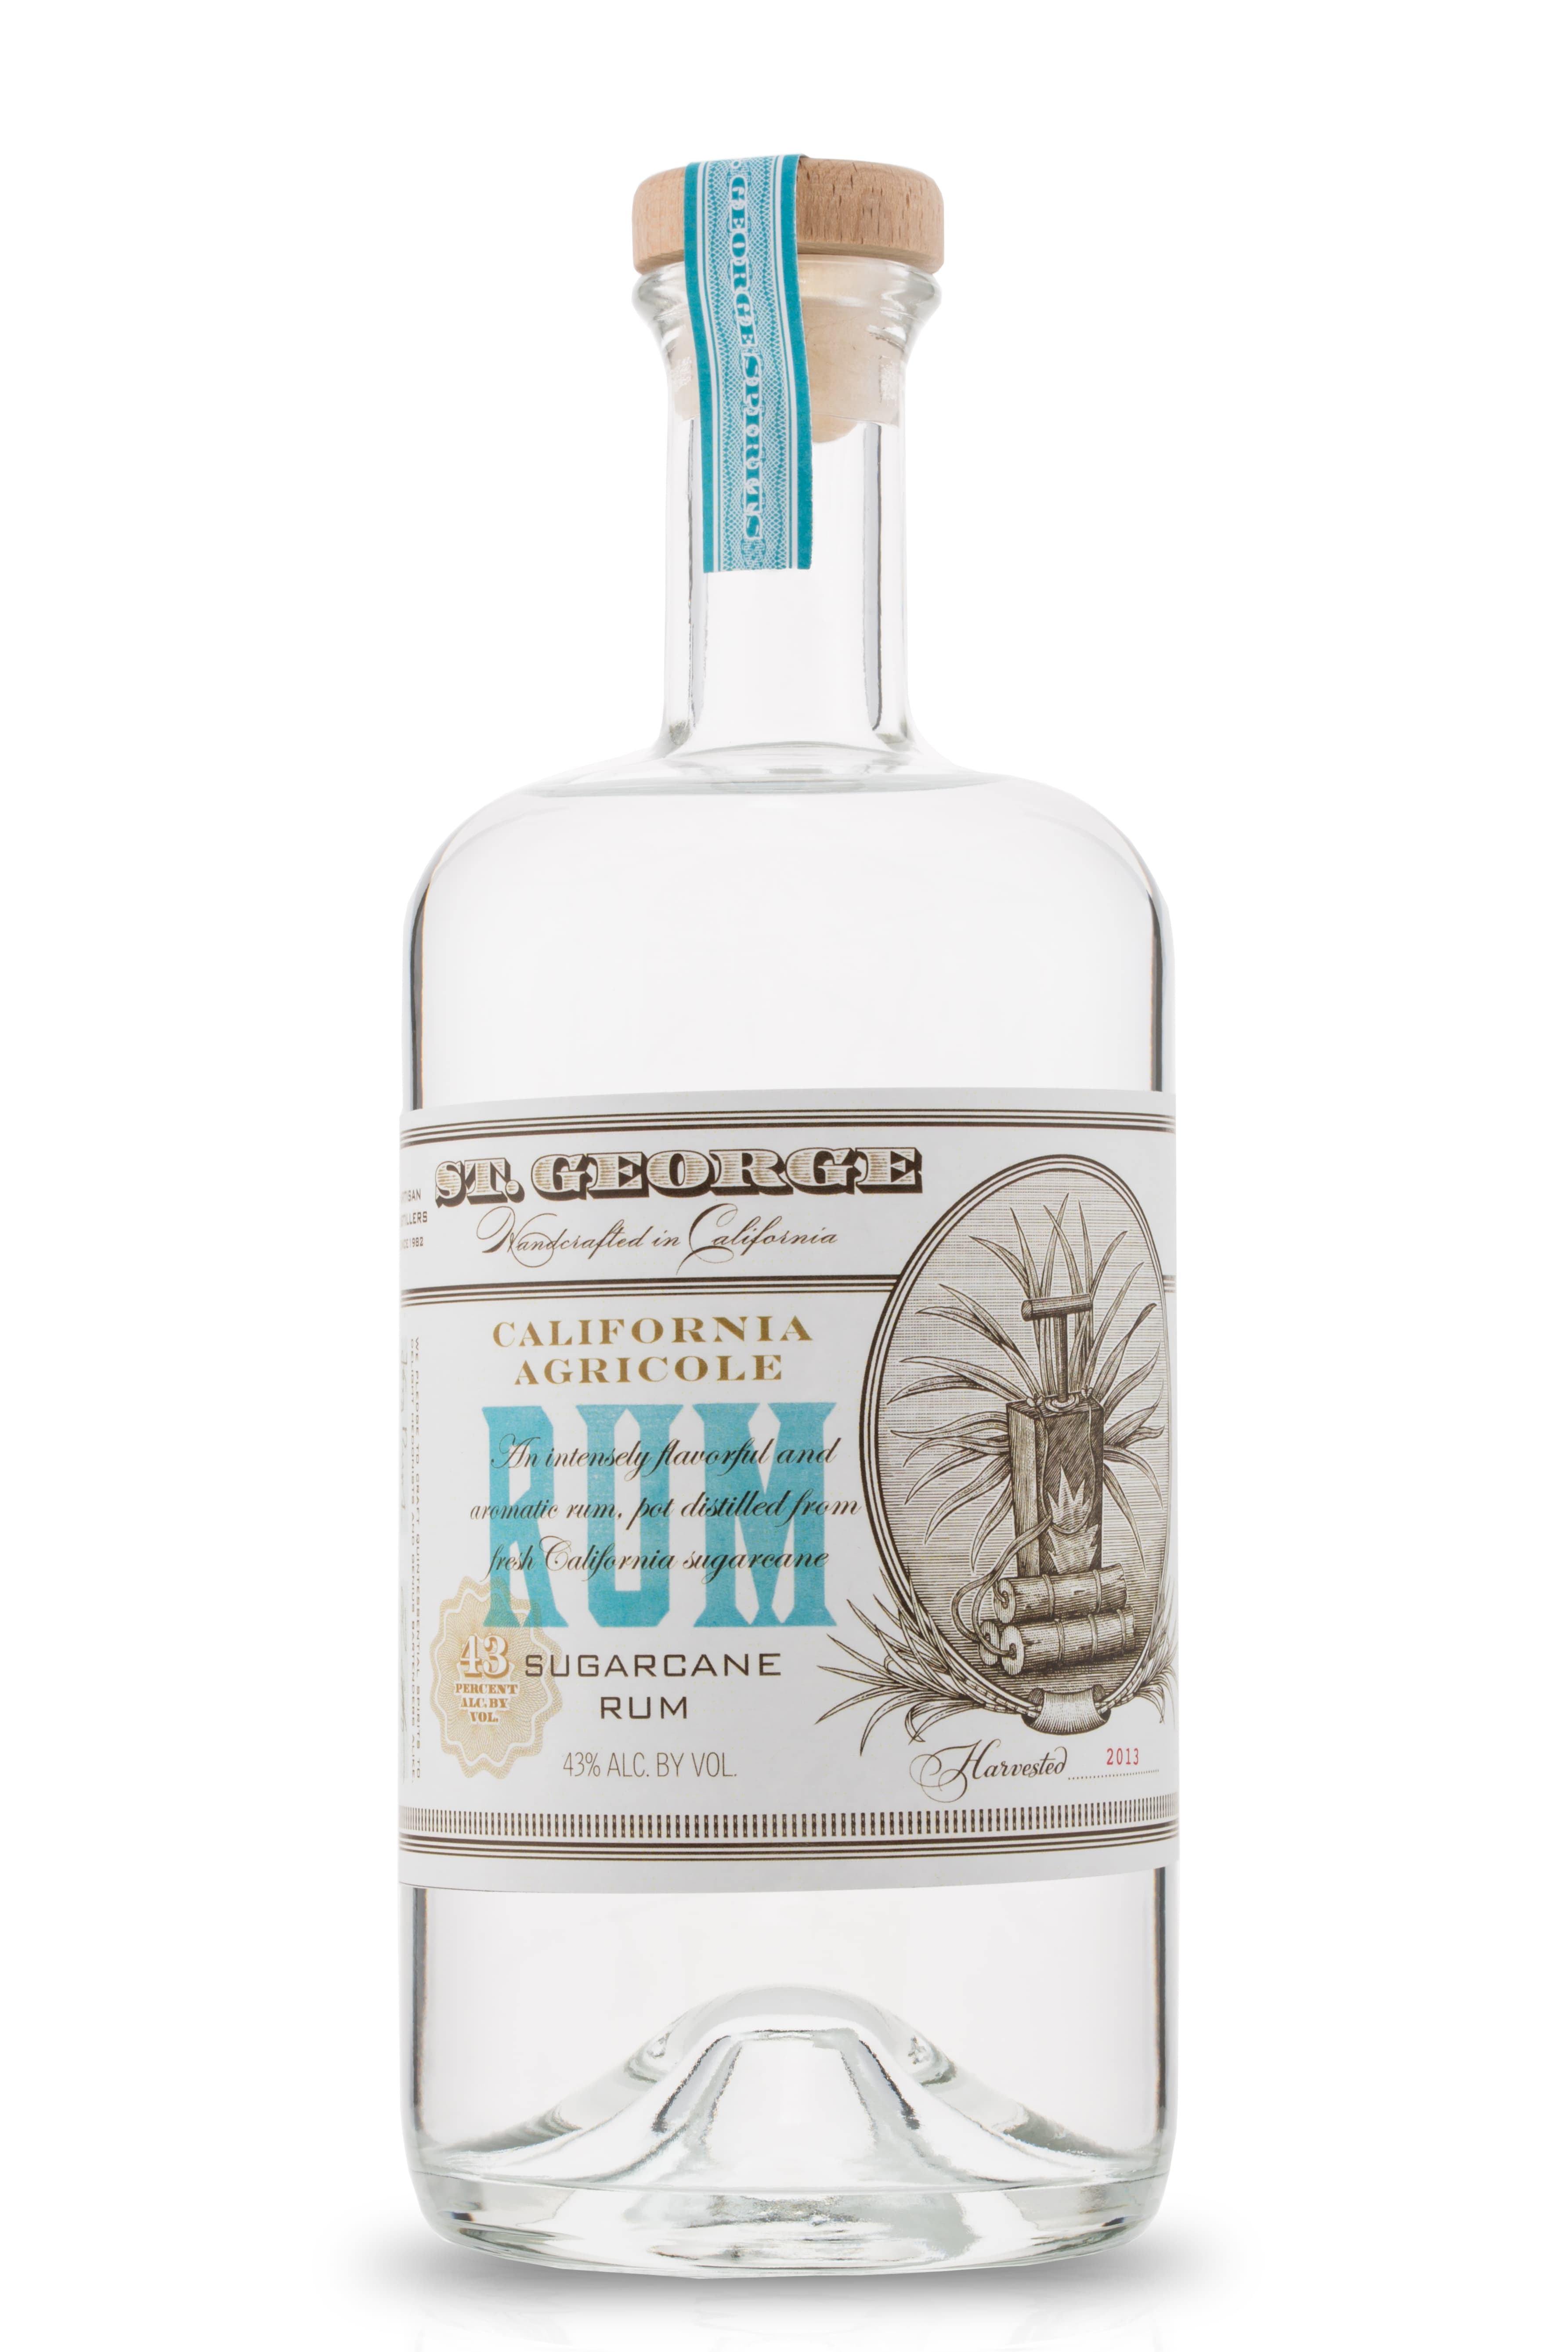 St. George California Agricole Rum